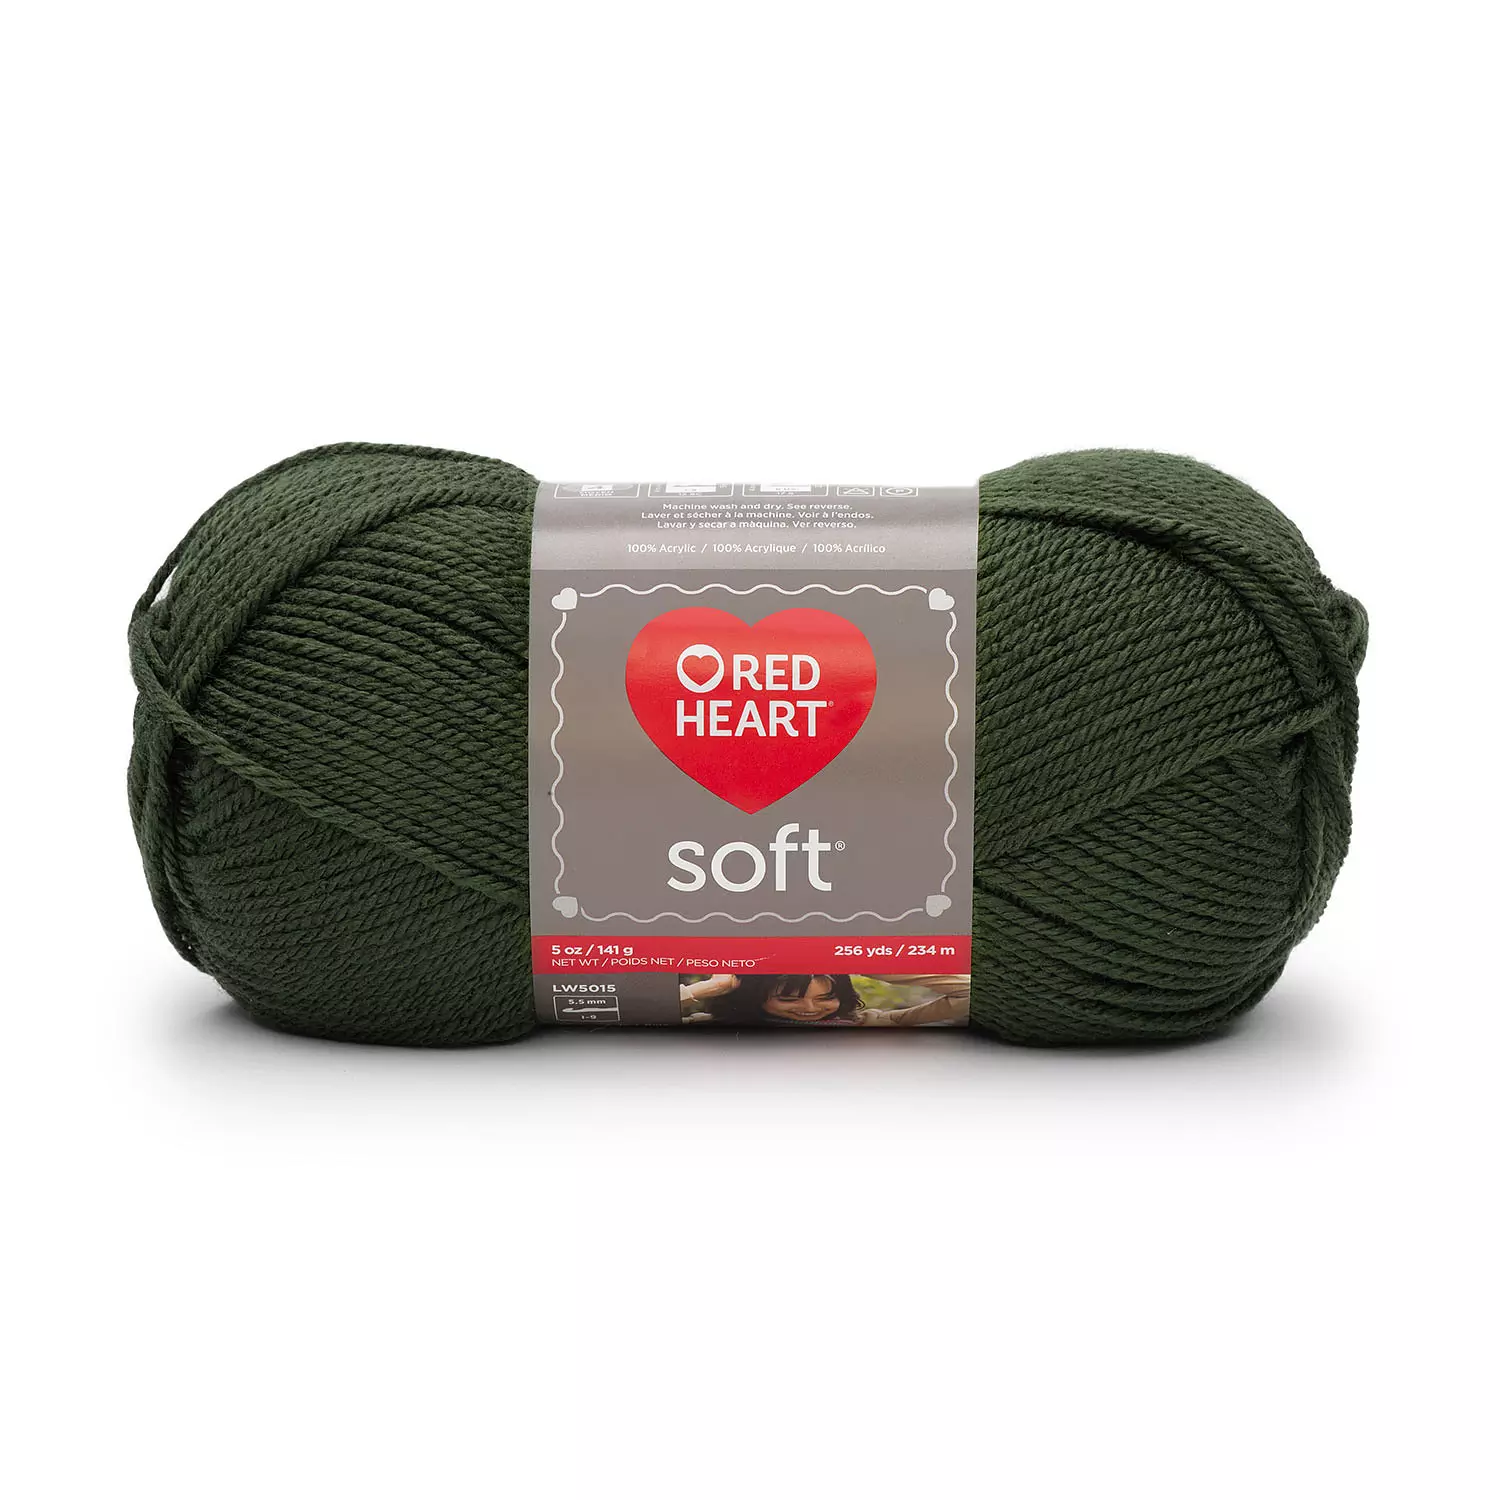 Red Heart Soft - Yarn, dark leaf